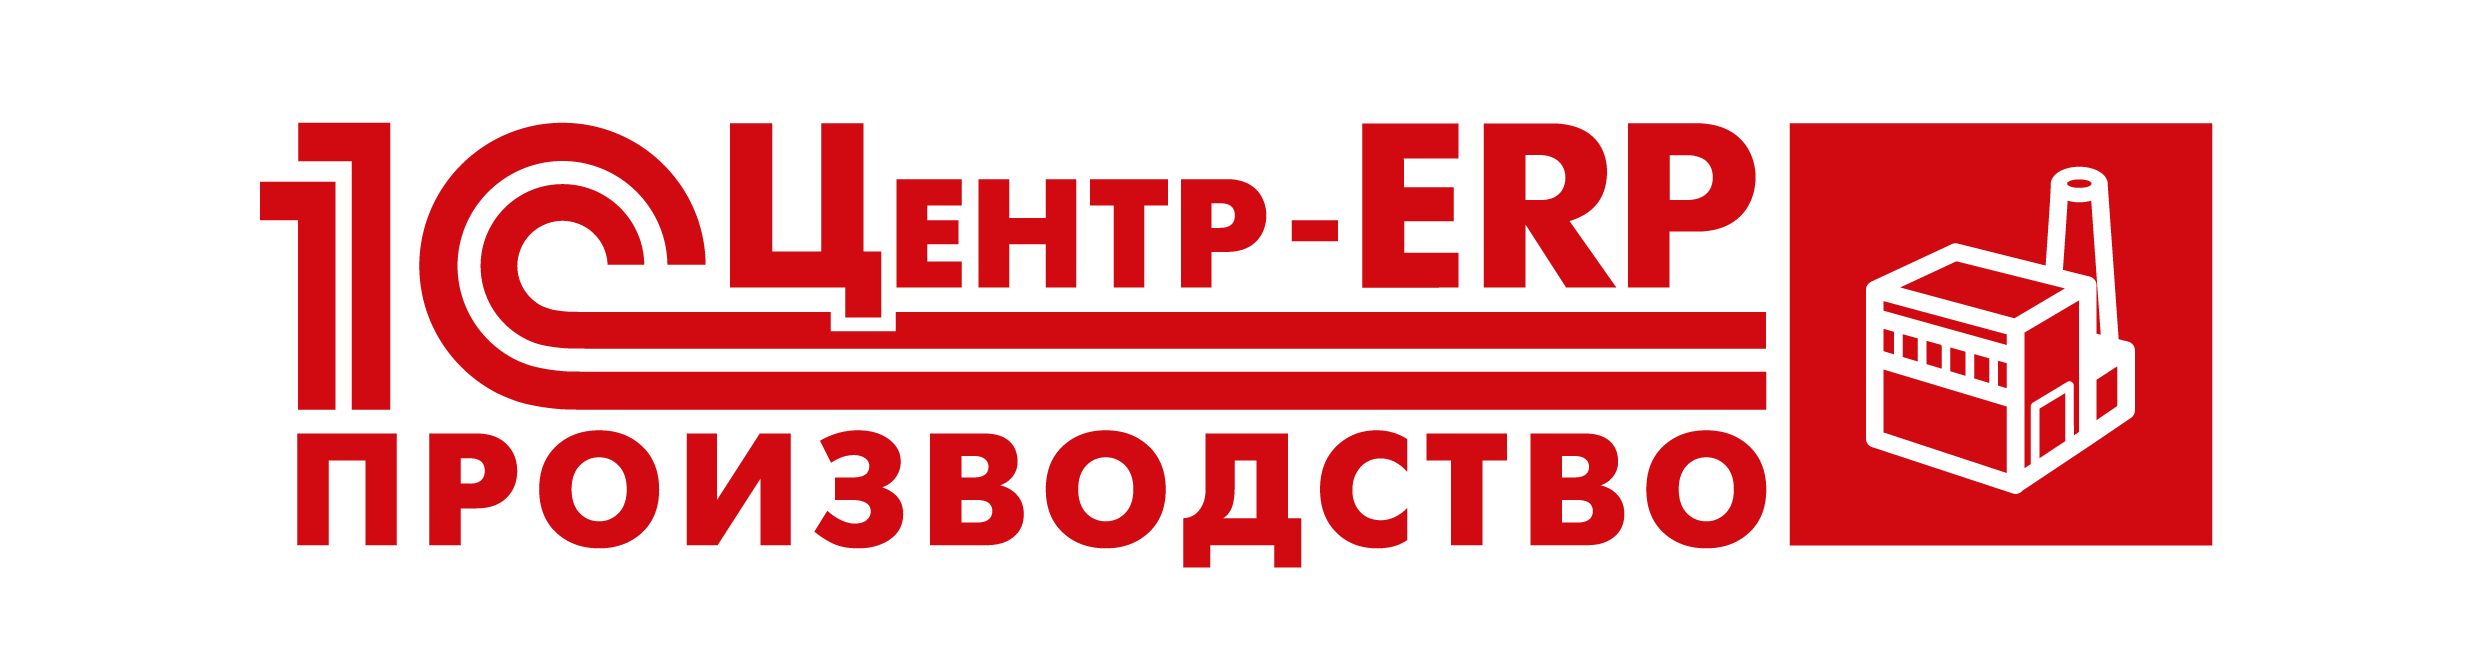 Статус производства. 1с центр ERP. 1с ERP логотип. 1с:центр ERP - производство. Центр компетенции ERP.